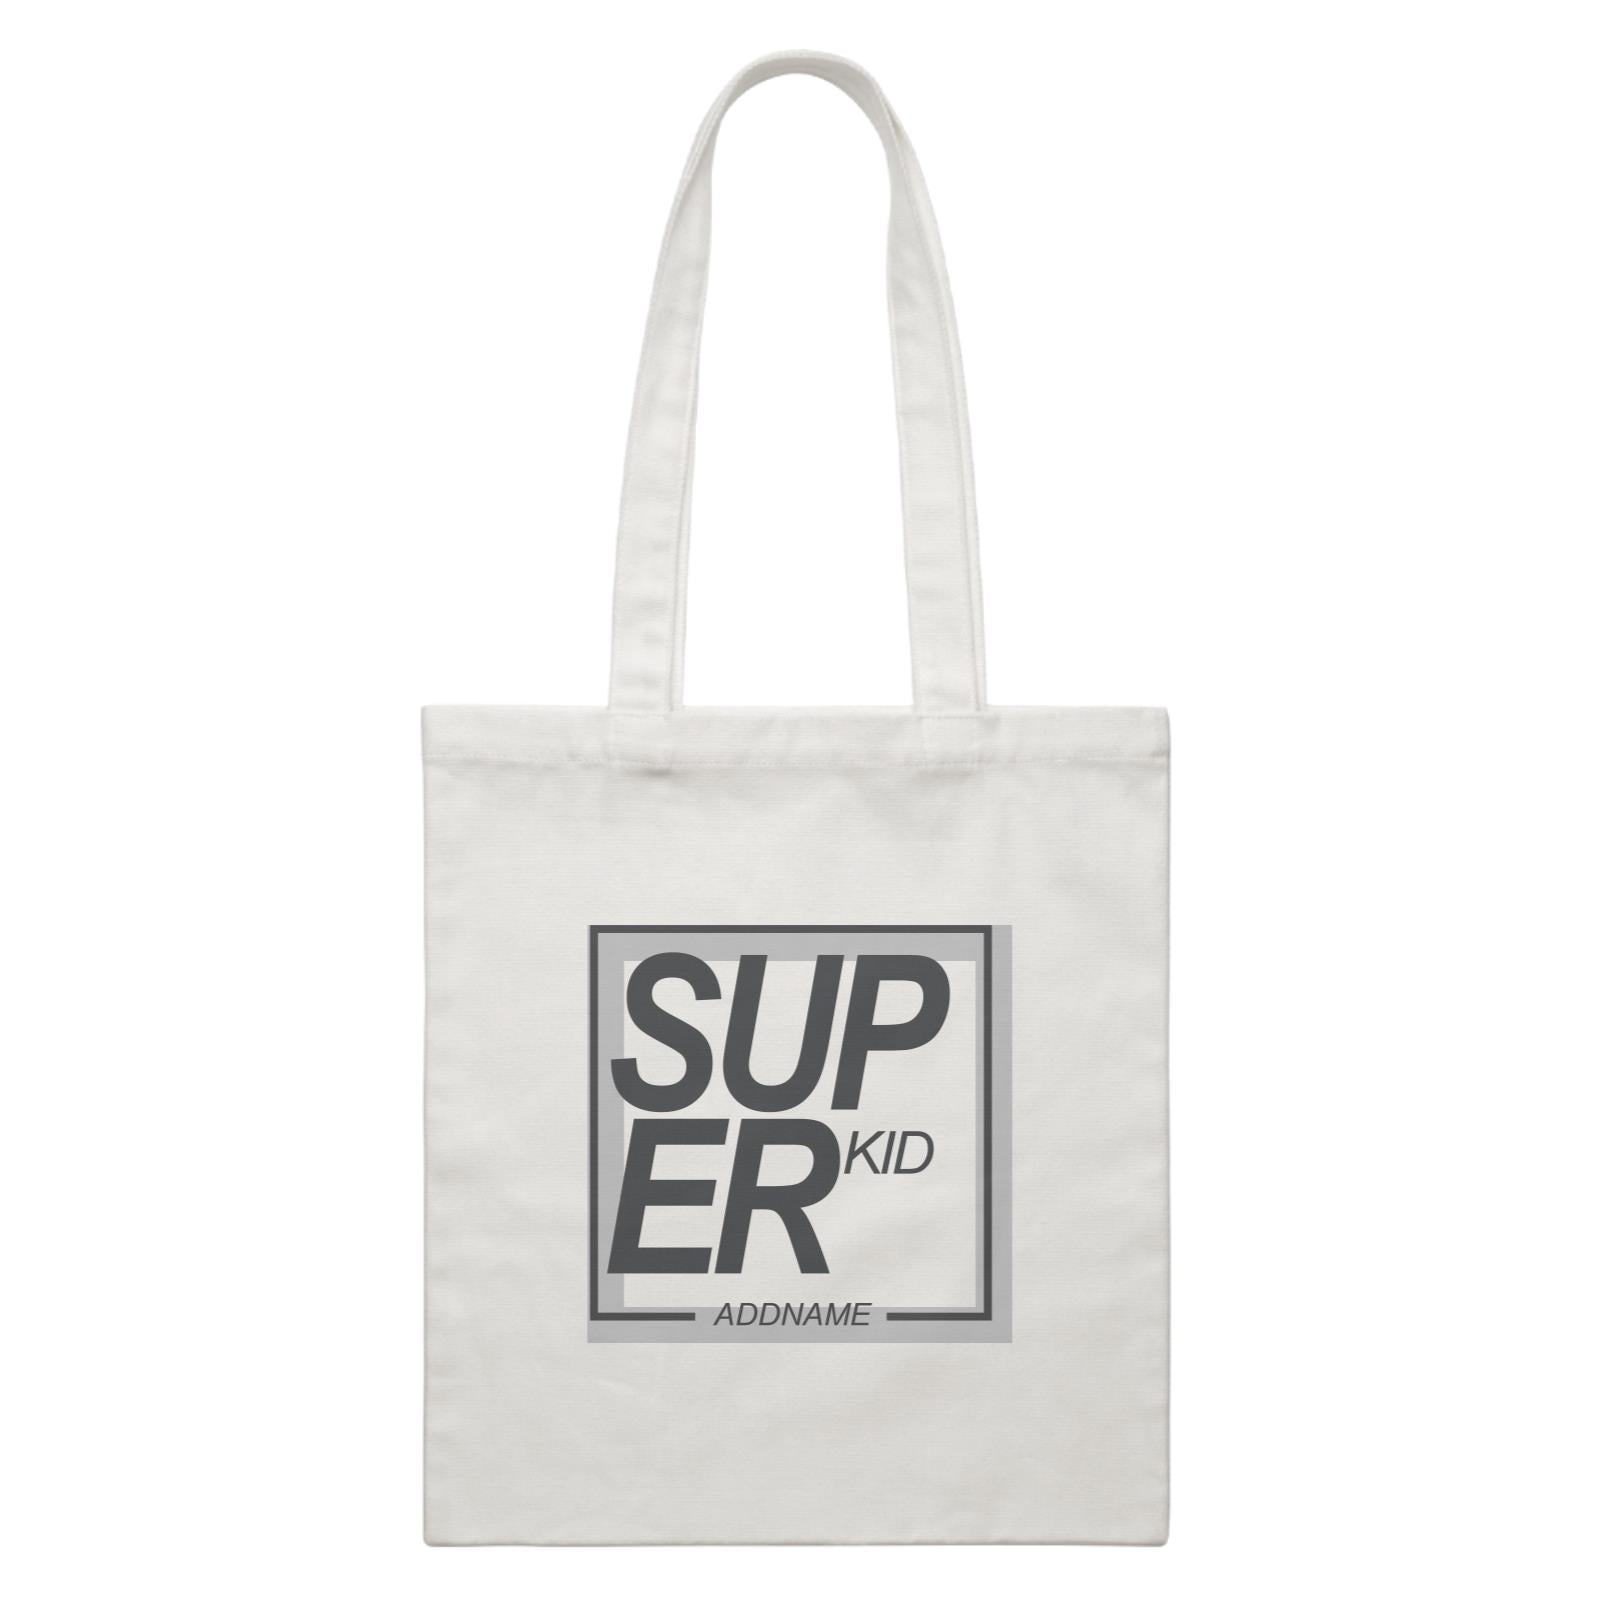 Super Box Family Super Kid Addname White Canvas Bag